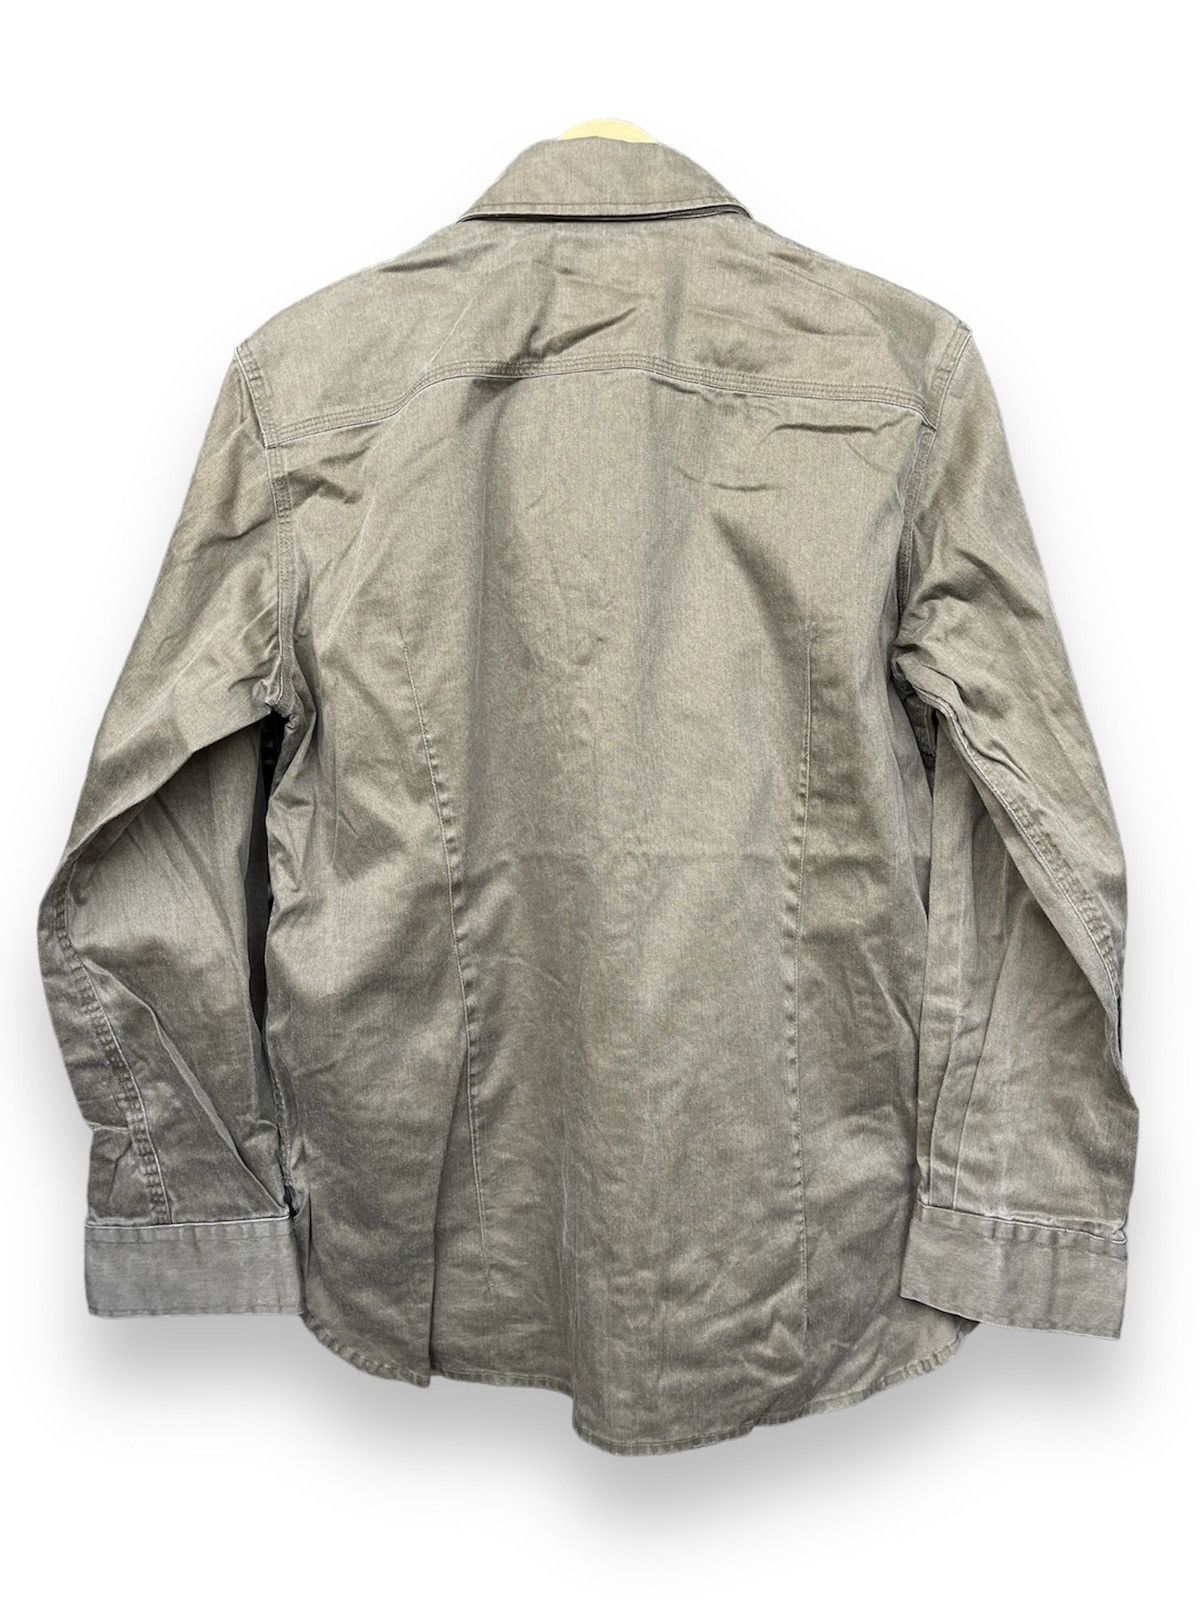 Yohji Yamamoto A.A.R Pockets Jacket - 2